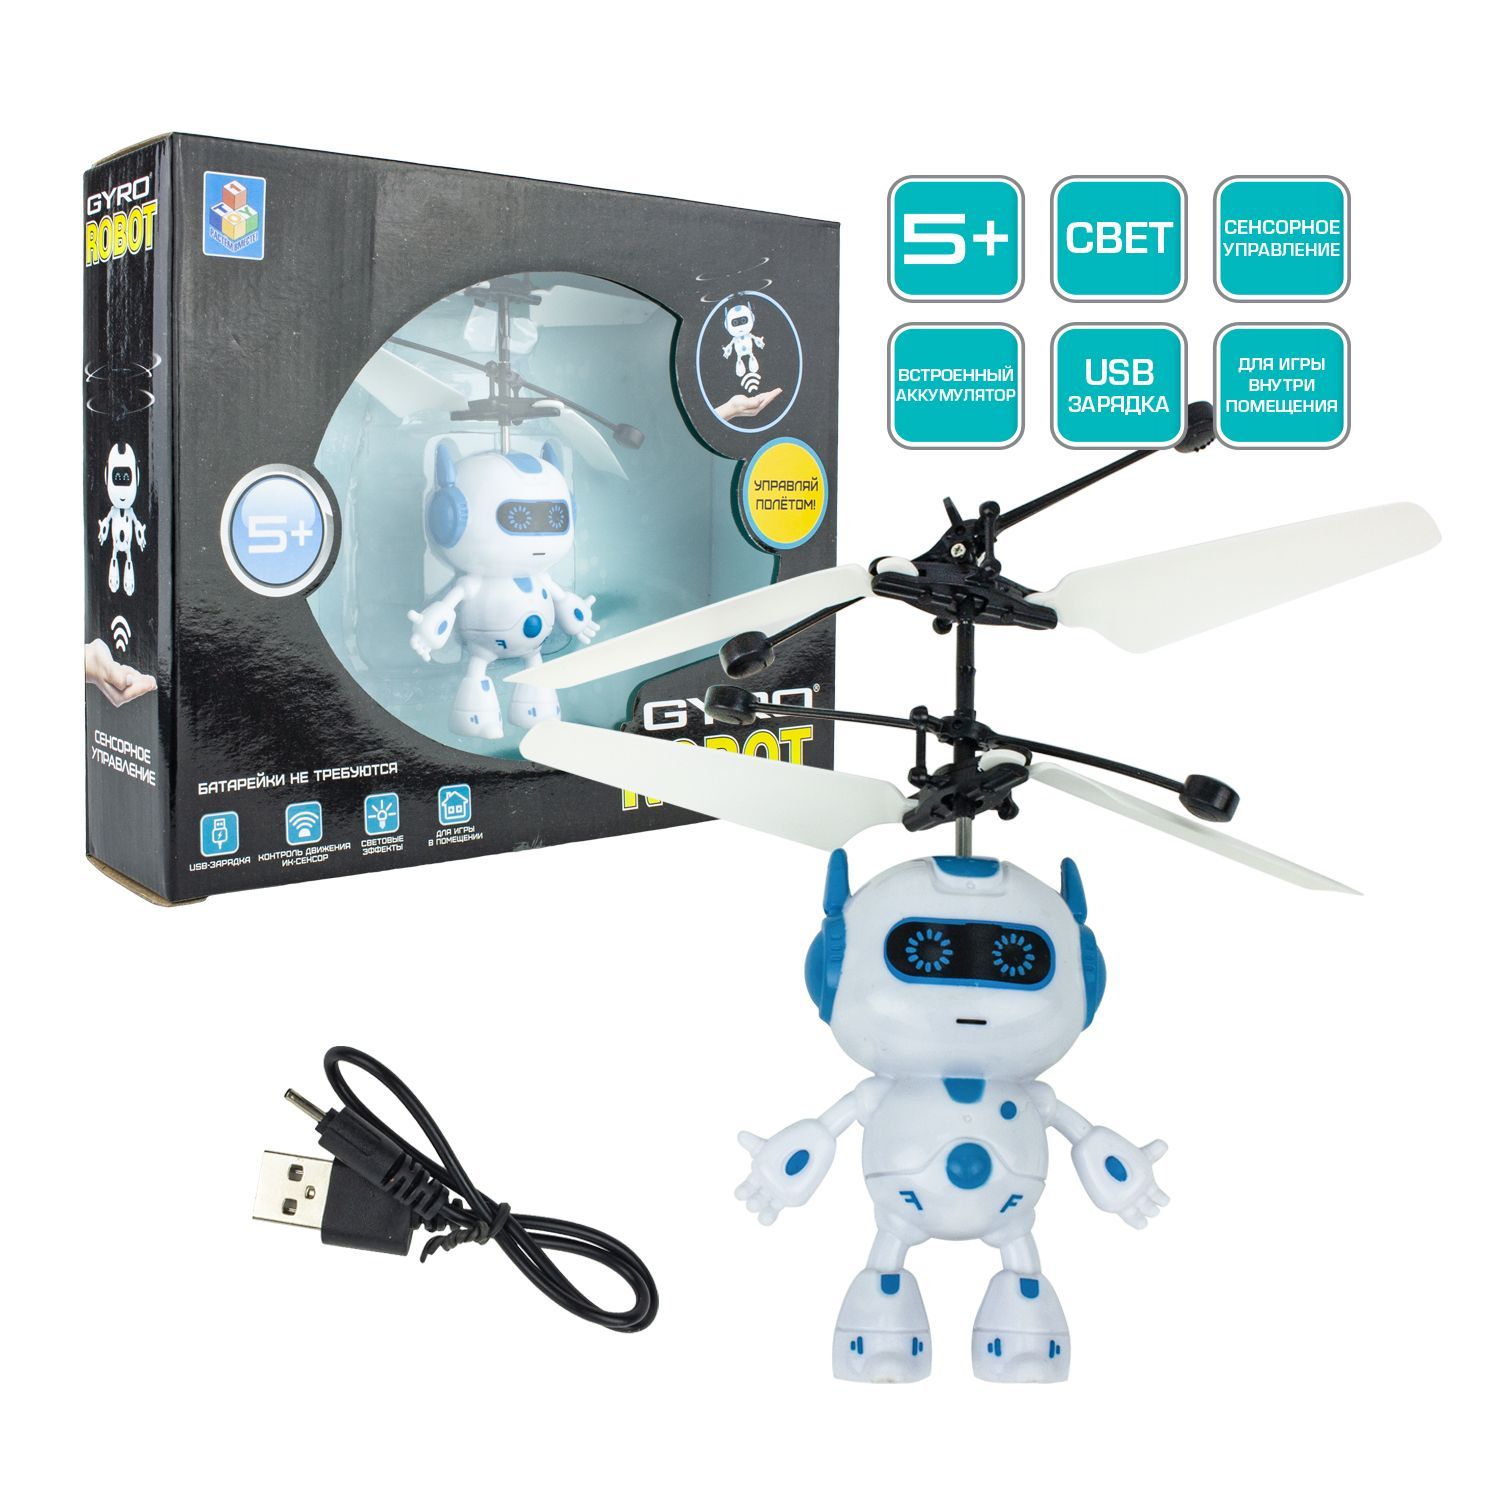 Вертолет Гиробот свет,USB,19*17,5*5,5см в кор.2*48шт. Робот т331. Описание робота игрушки. Робот т10. Робот gyro